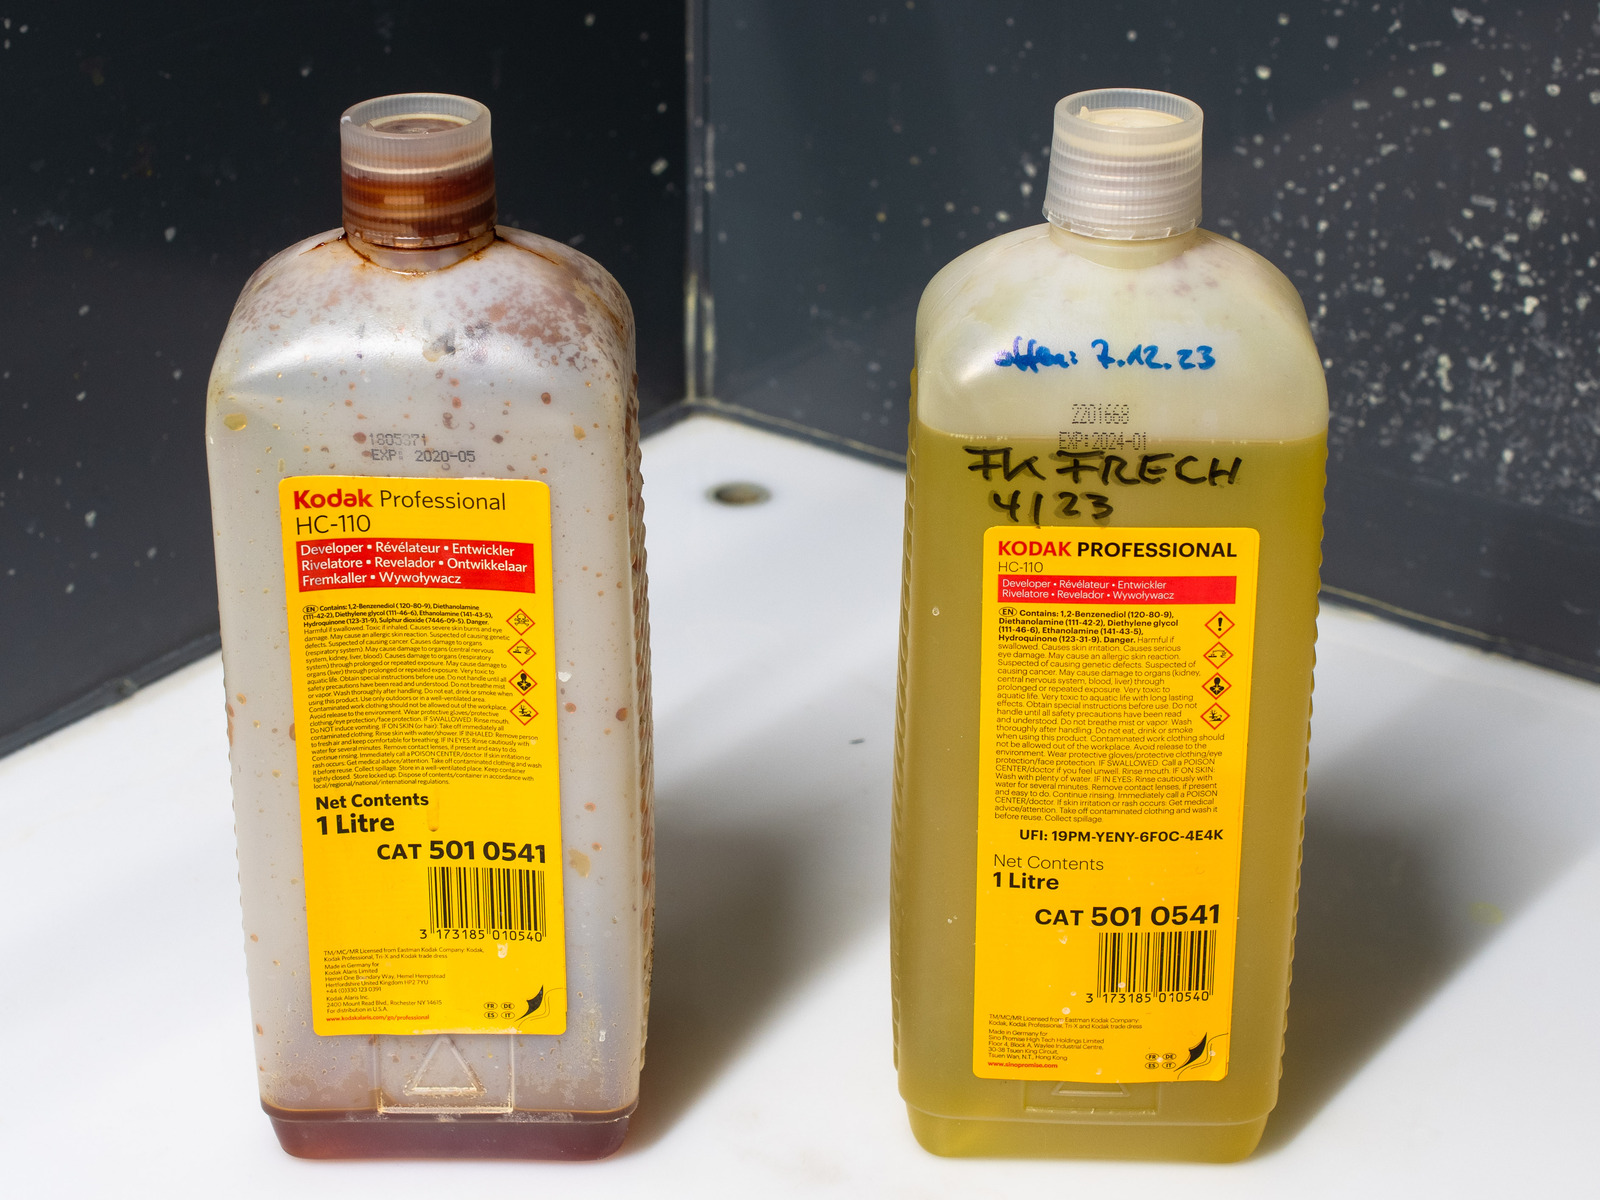 Zwei 1-Liter-Flaschen Kodak-Entwicklerkonzentrat HC-110 (CAT 501 0541) im Laborbecken. Die linke Flasche ist beinahe leer, die Restflüssigkeit ist dunkelbraun; die rechte Flasche ist voll, die Flüssigkeit ist dunkelgelb. Die rechte Flasche ist handschriftlich beschriftet: Fk Frech 4/23 offen: 7.12.23